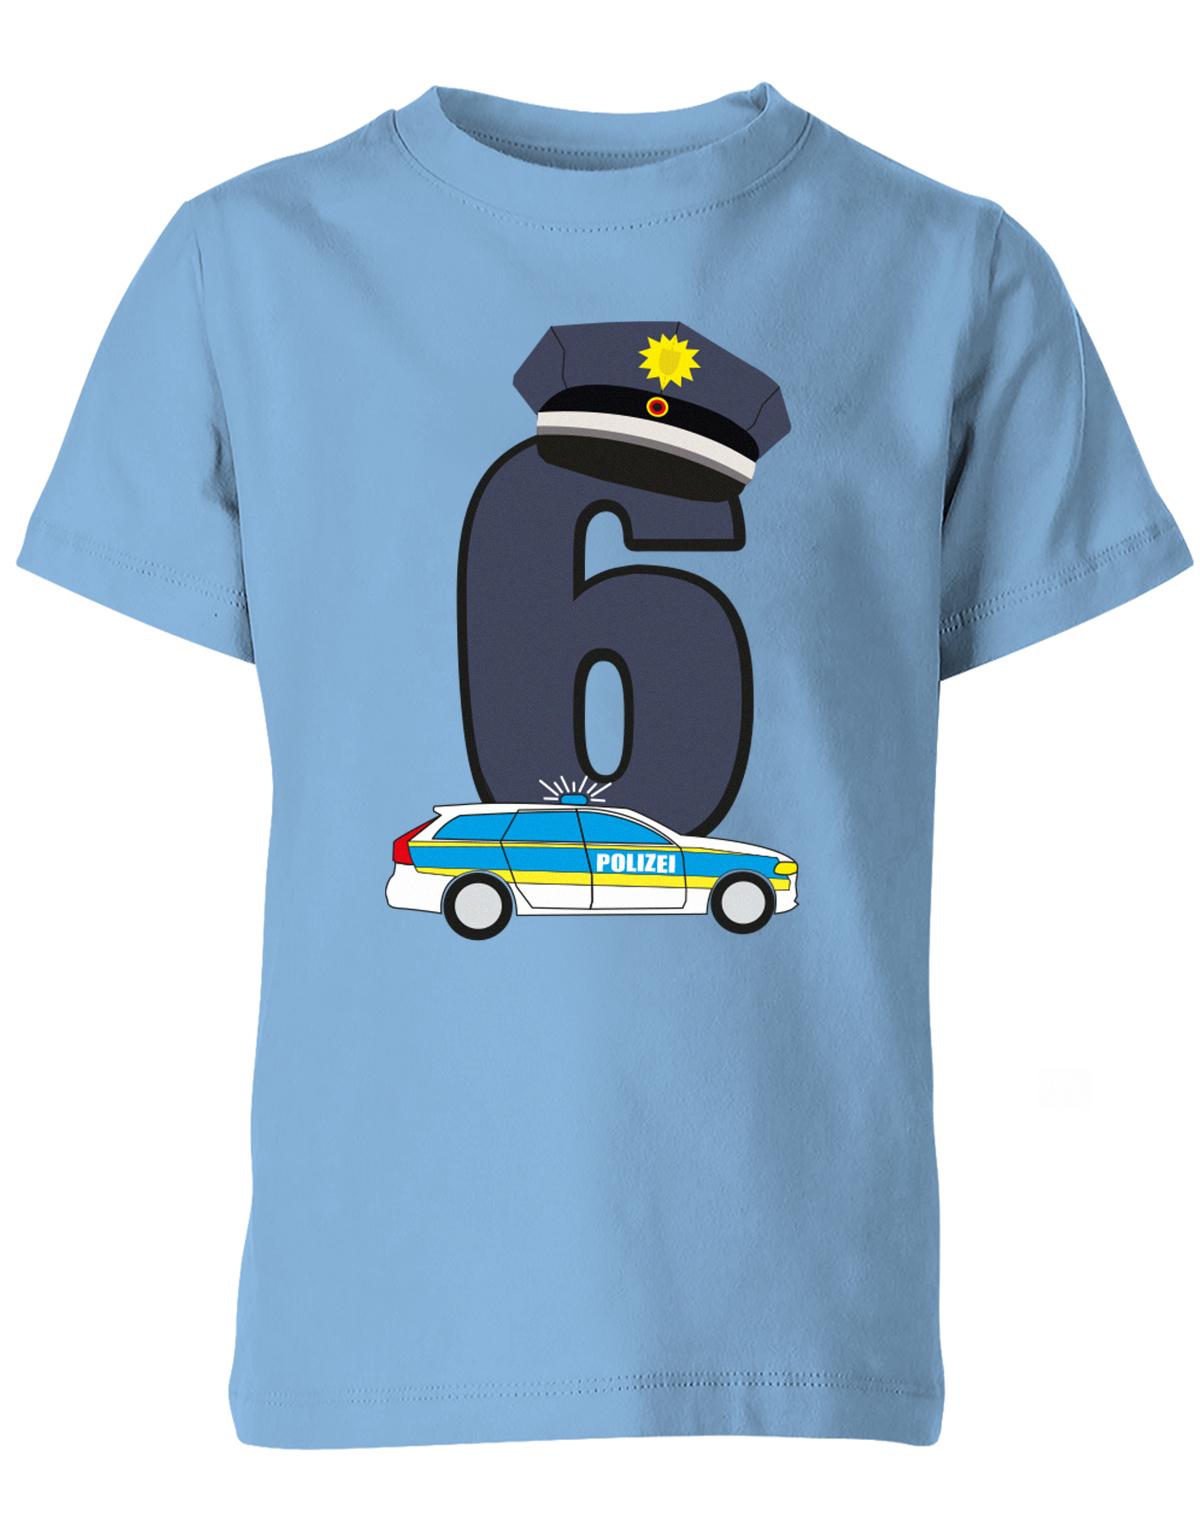 ich-bin-6-polizei-geburtstag-kinder-shirt-hellblau